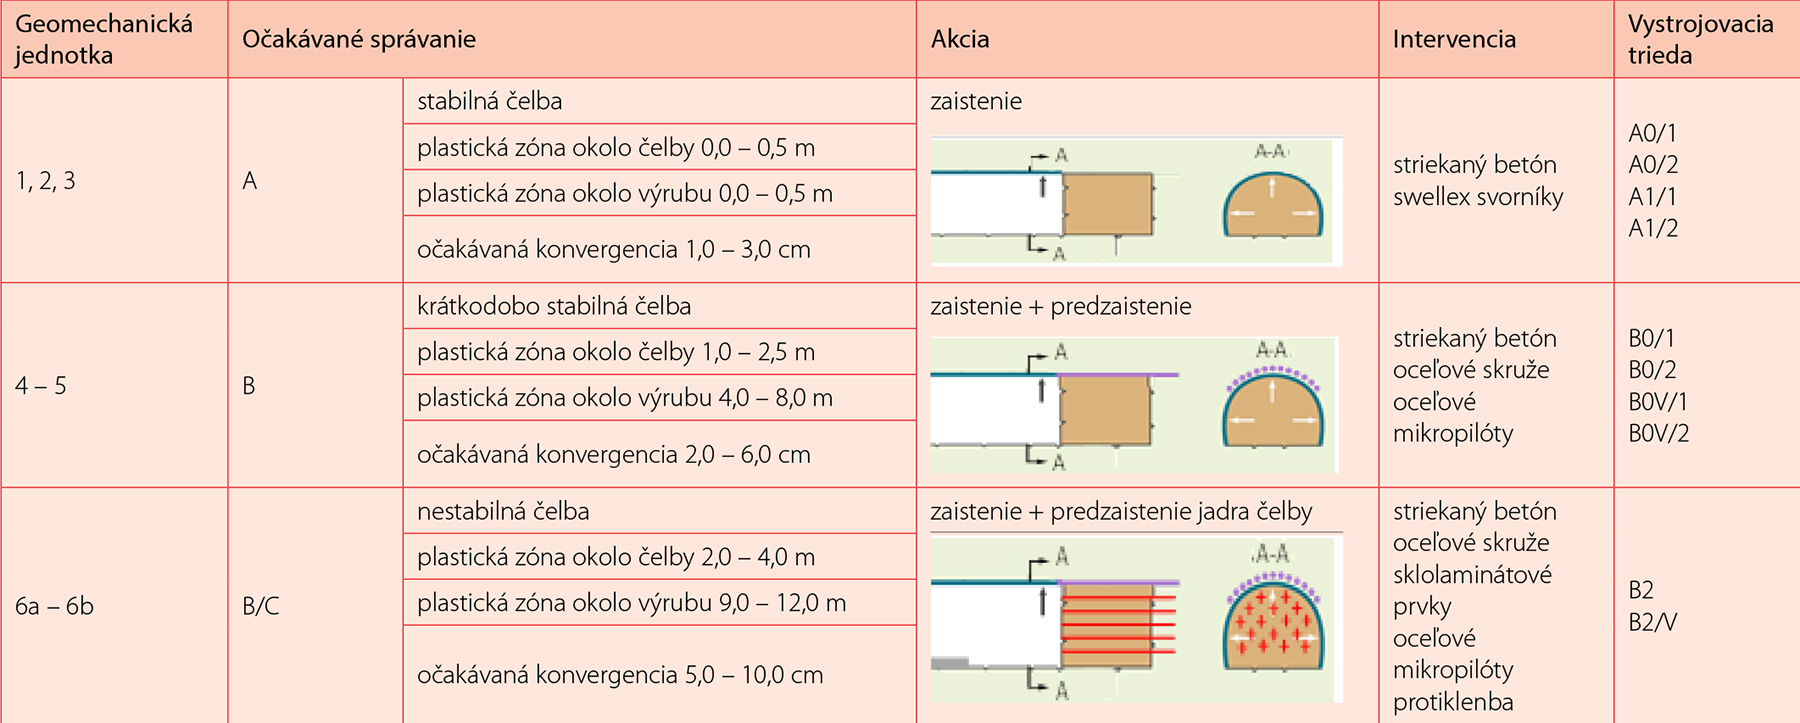 Tab. 2 Vystrojovacie triedy vs geomechanické jednotky